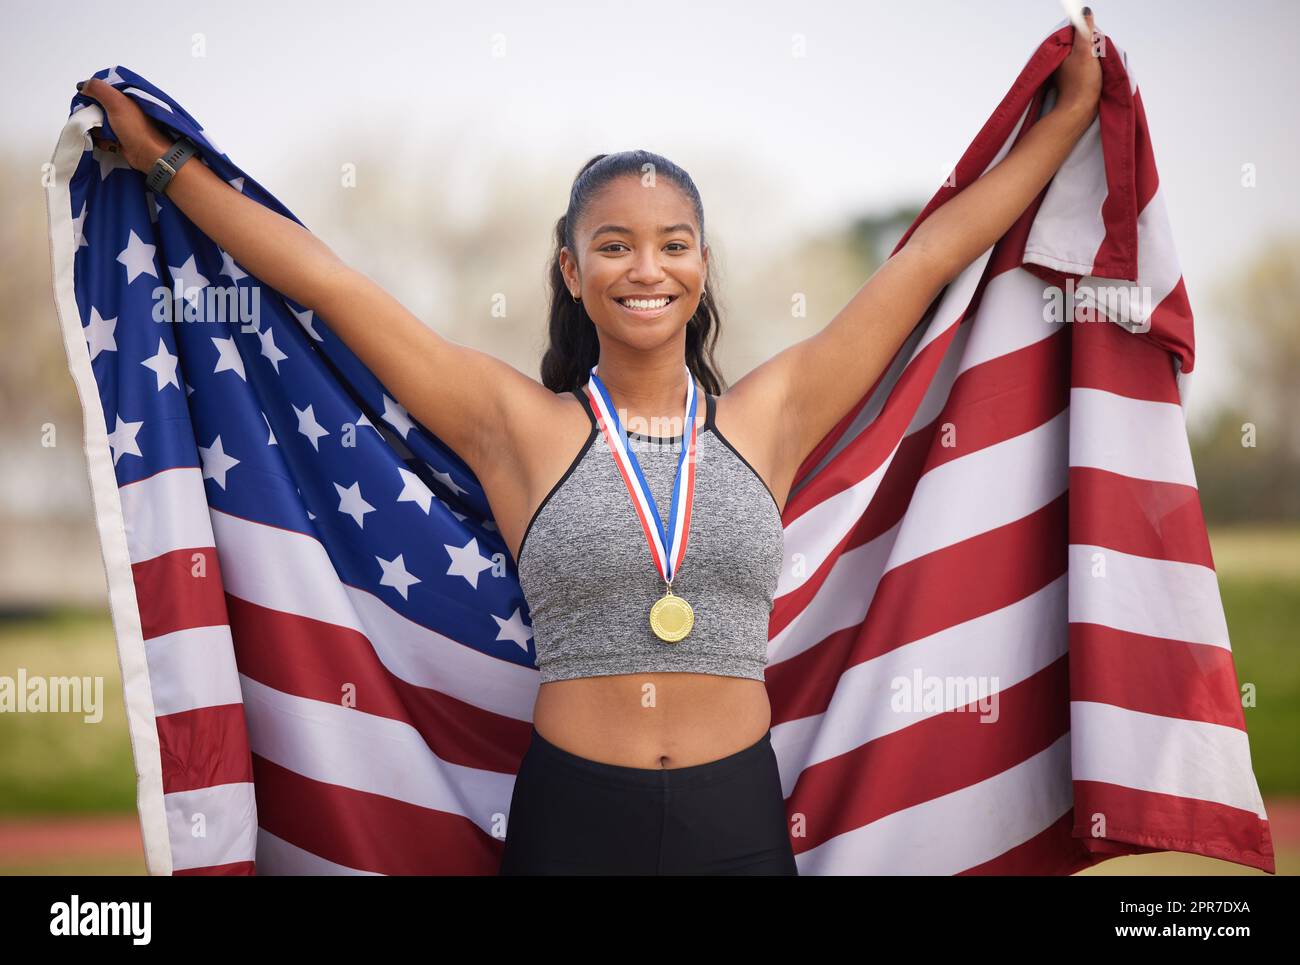 Heben Sie Ihre Fahne. Beschnittenes Porträt einer attraktiven jungen Sportlerin, die einen Sieg für ihr Land feiert. Stockfoto